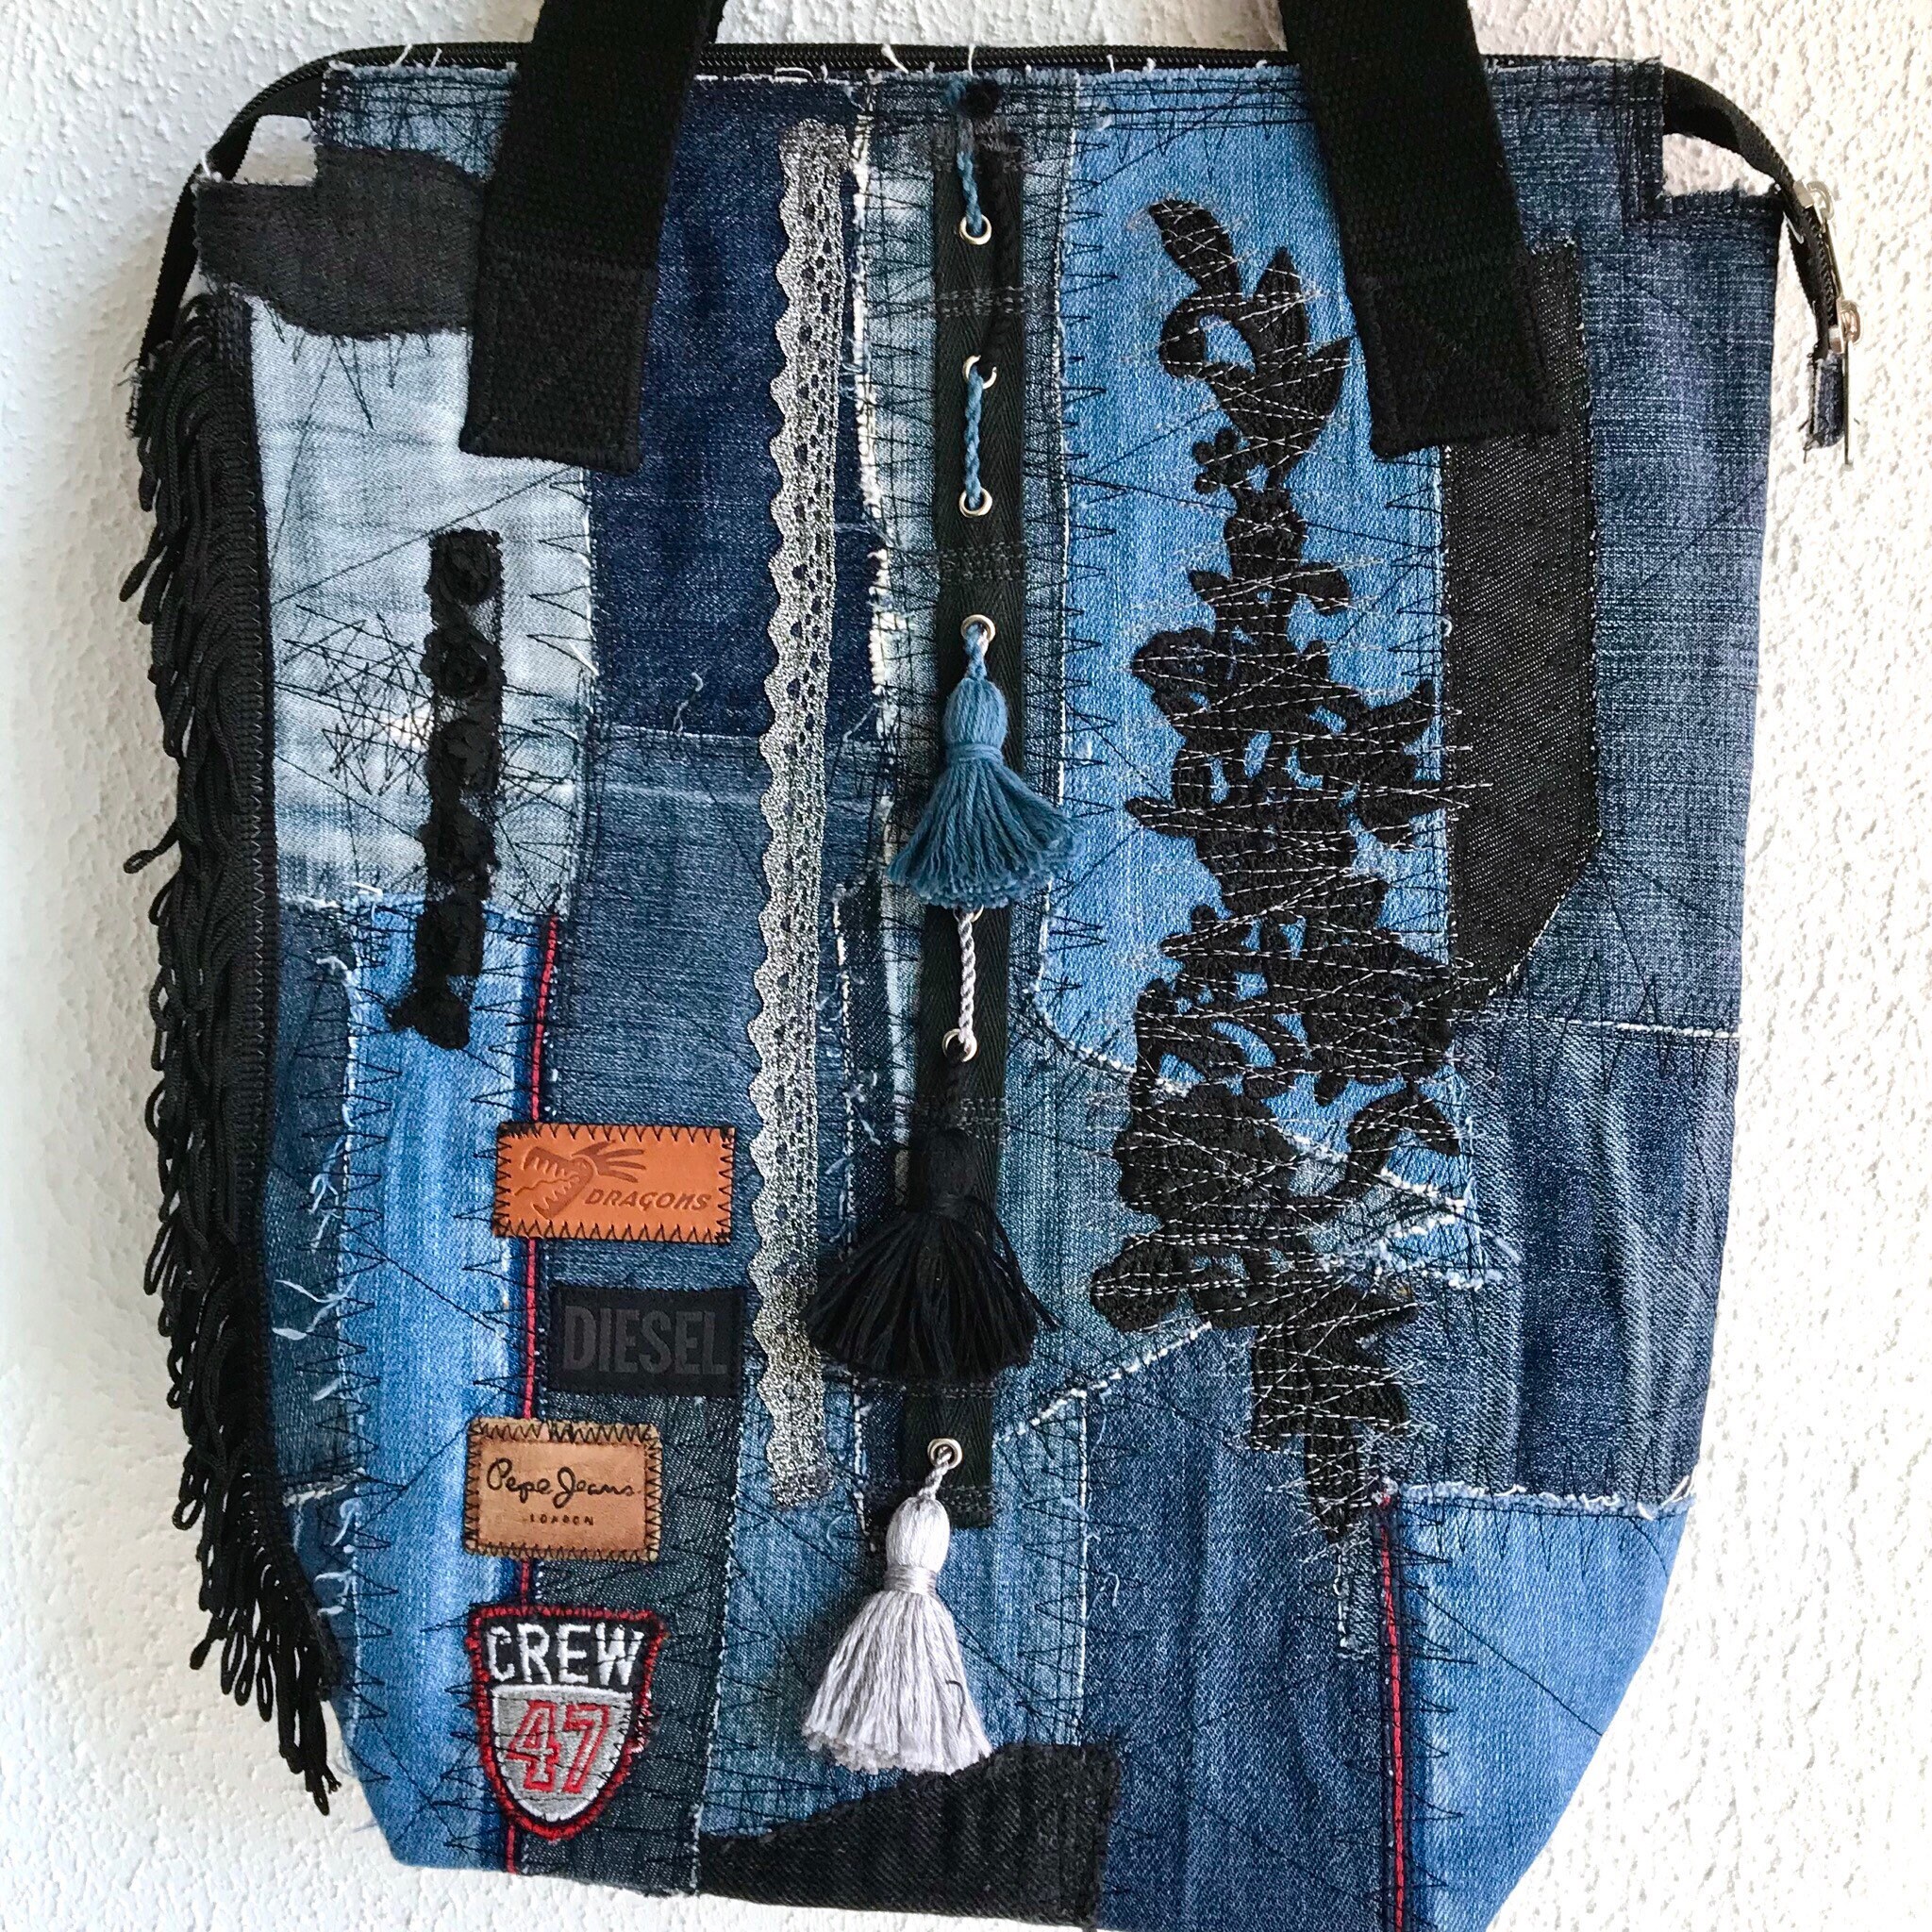 Blue Denim Patchwork Bag Upcycled Reused Jeans Tassels Fringes - Etsy ...